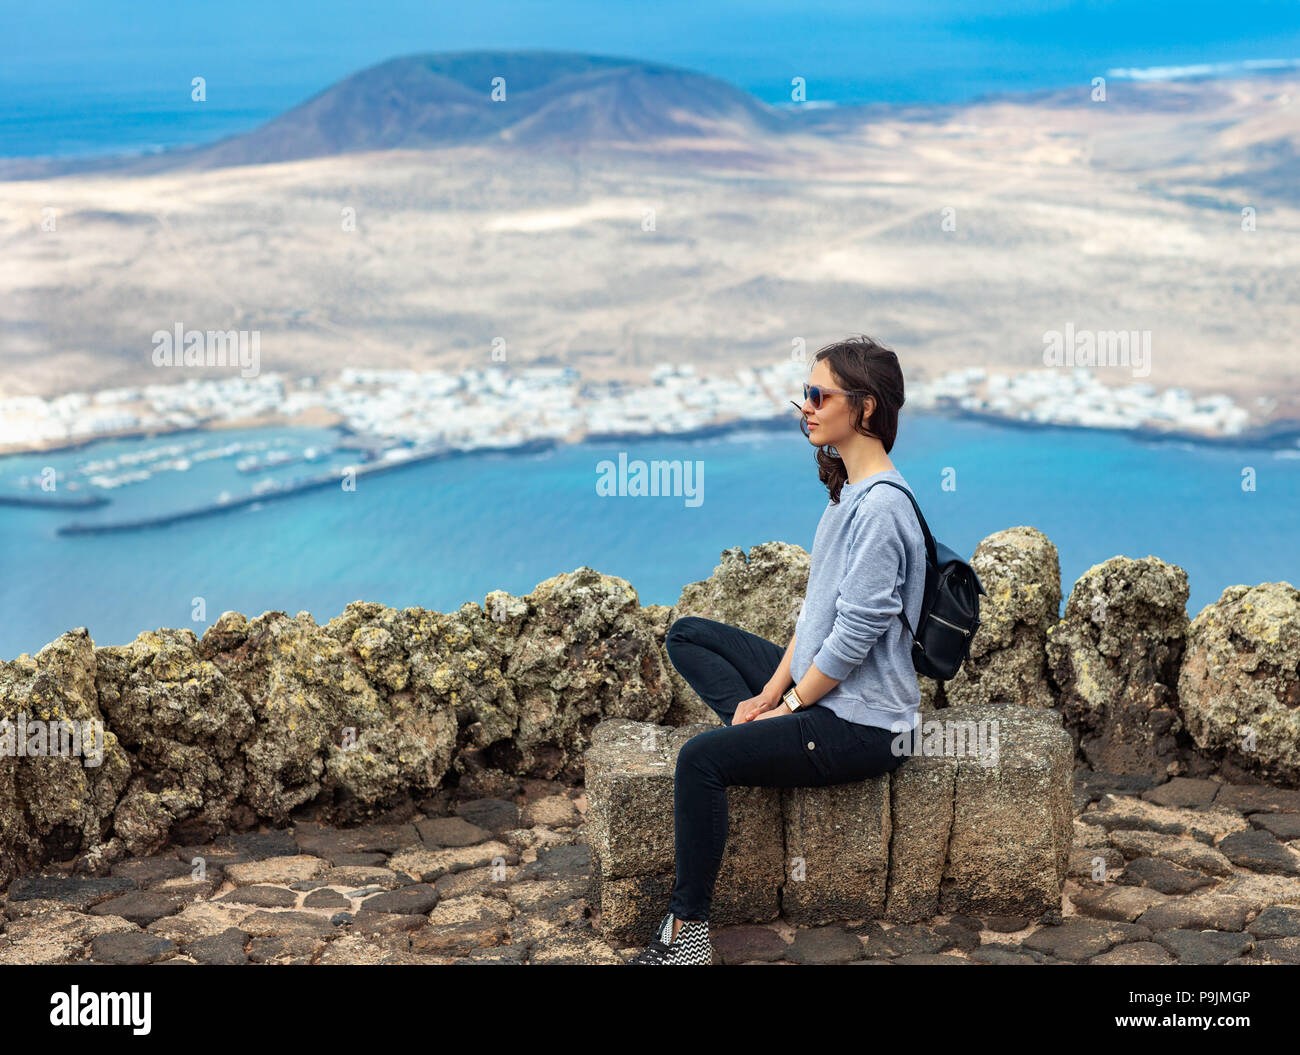 Traveler donna godendo al punto di vista sull'isola. Travel Vacation concetto. La Graciosa Island, Mirador del Rio, Lanzarote, Isole Canarie, Spagna. Foto Stock